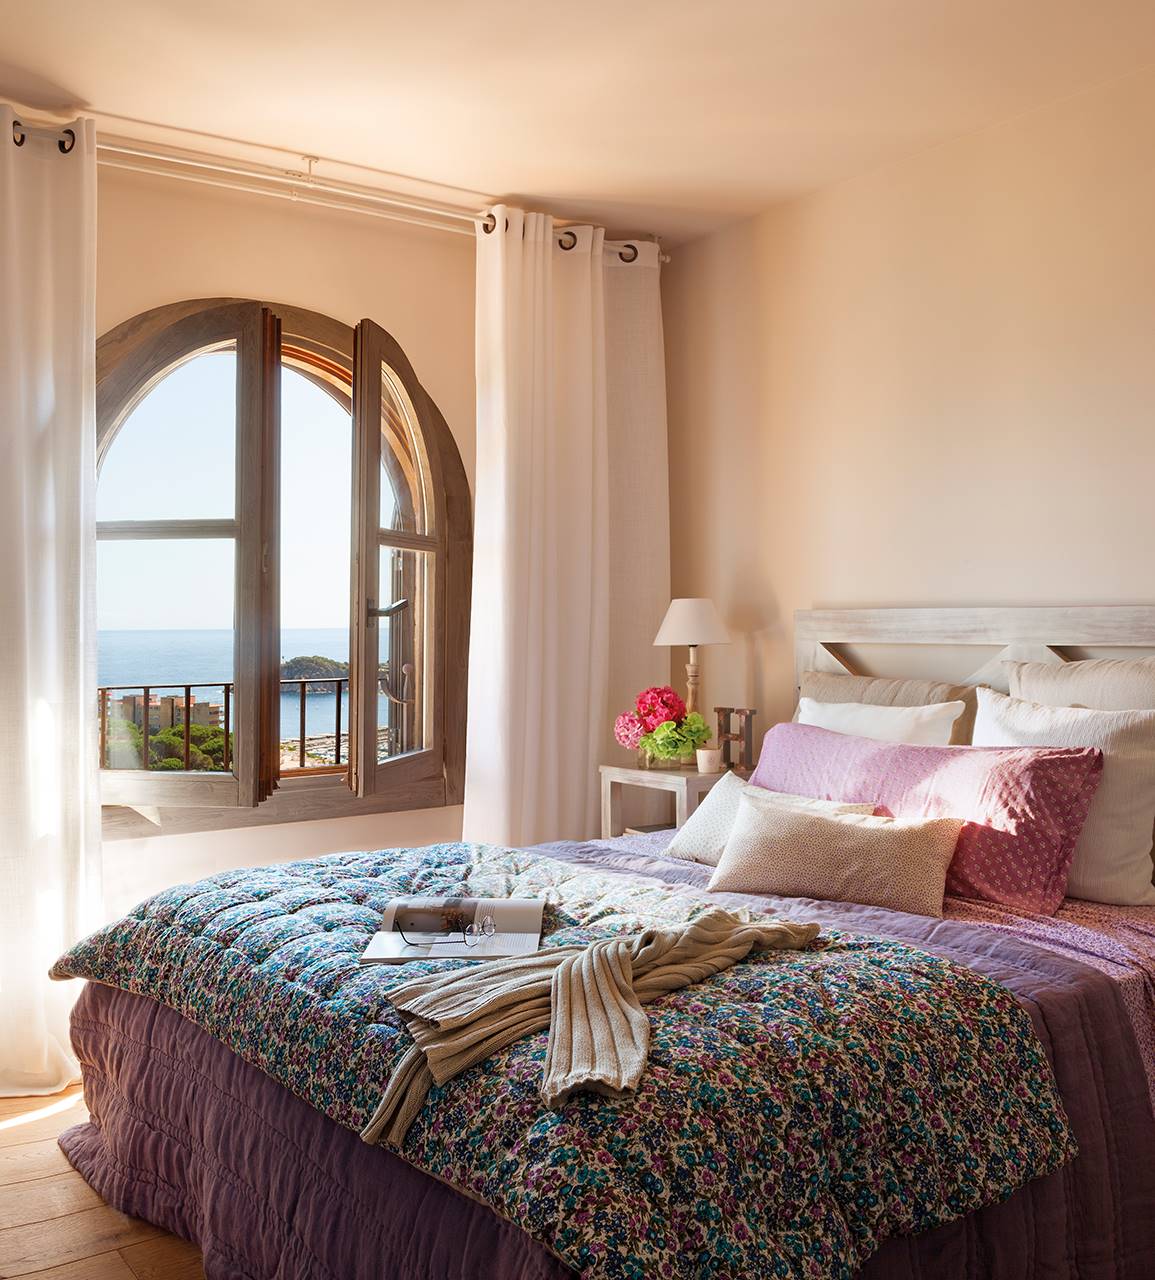 Dormitorio con ventana en arco y vistas al mar